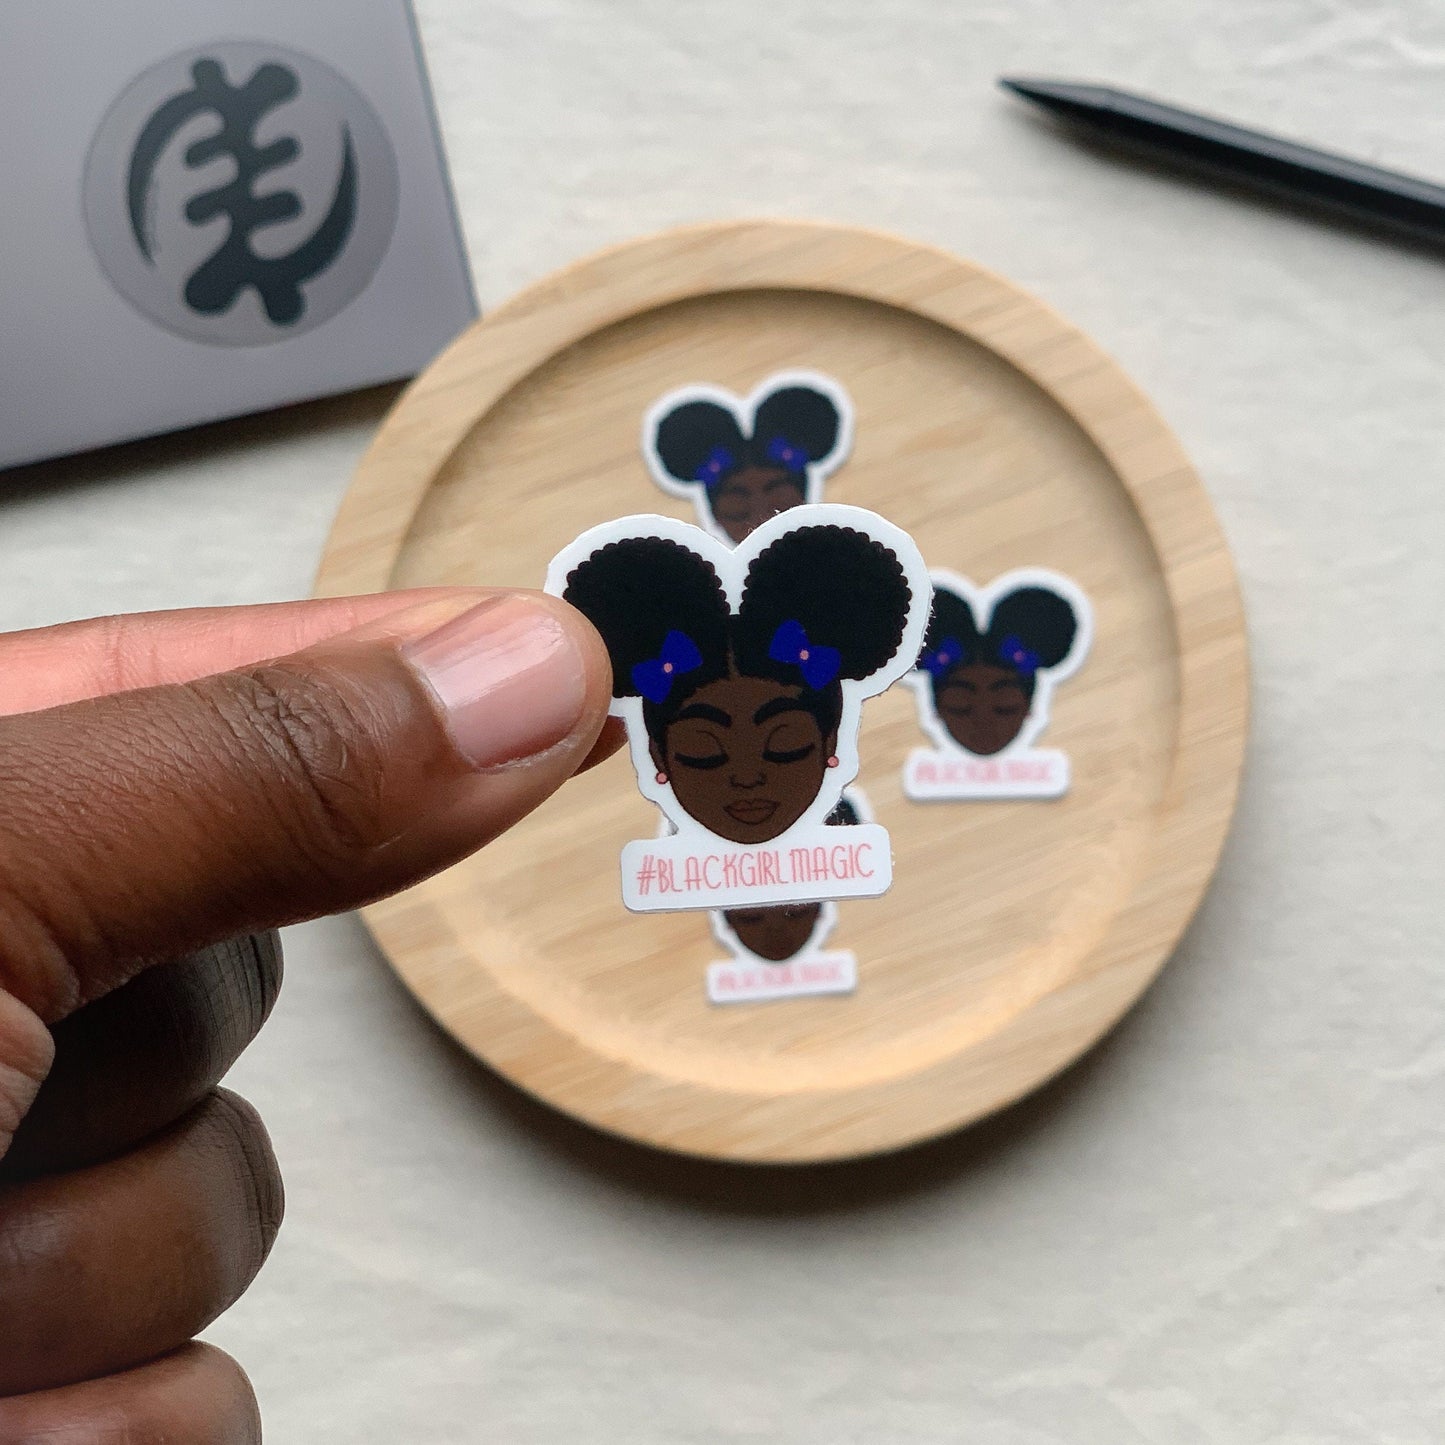 Sticker| Schwarzes Mädchen mit 2 Afrohairpuff Blackgirlmagic 33 x 34 mm